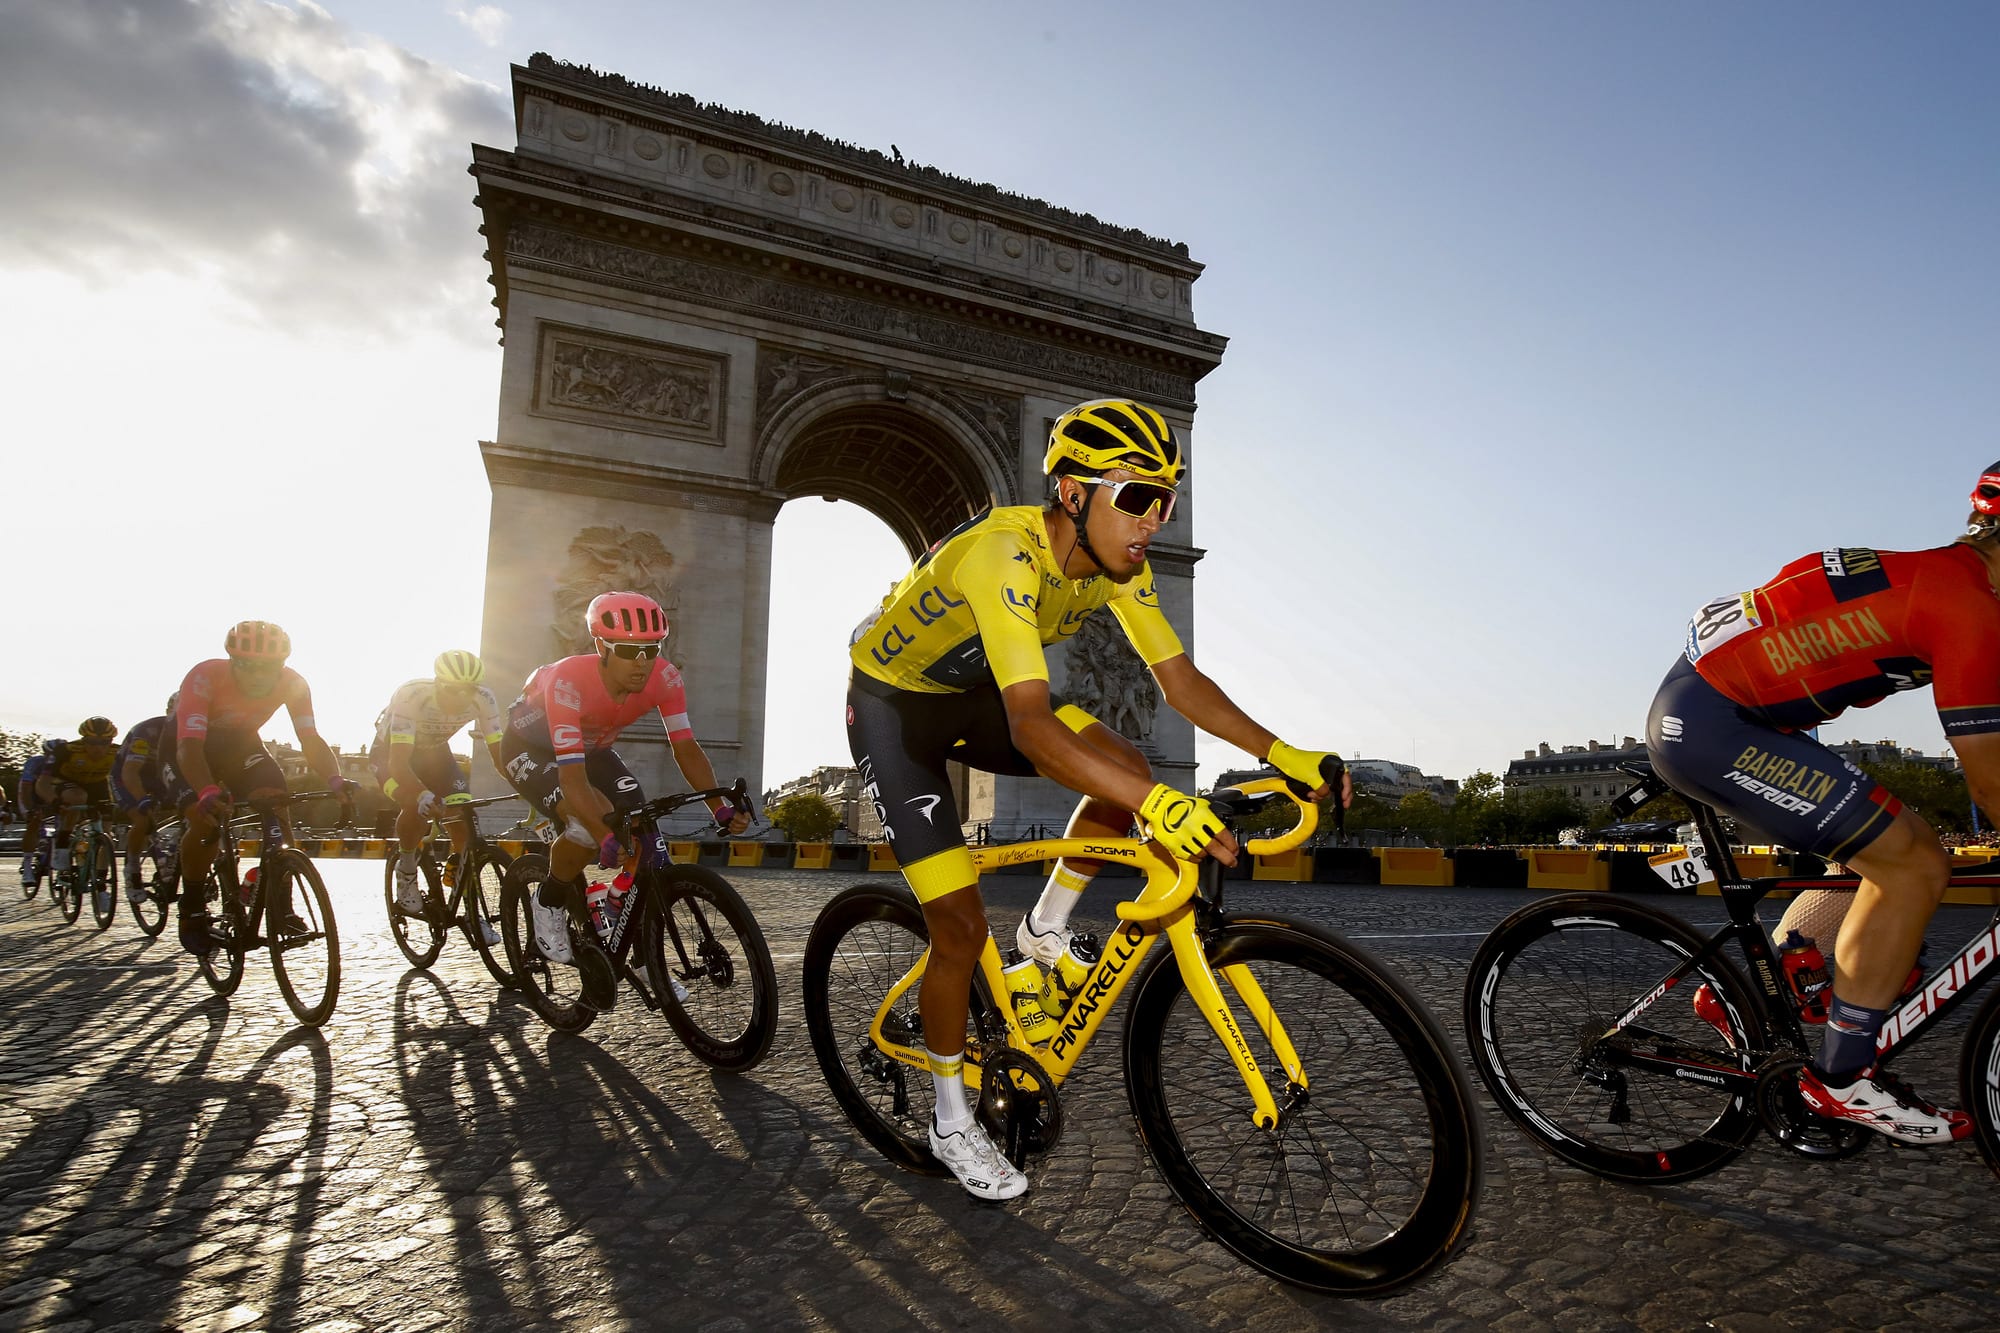 Parte la 107esima edizione del Tour de France: dirette su RaiDue e RaiSport. Ecco tutto il programma in tv